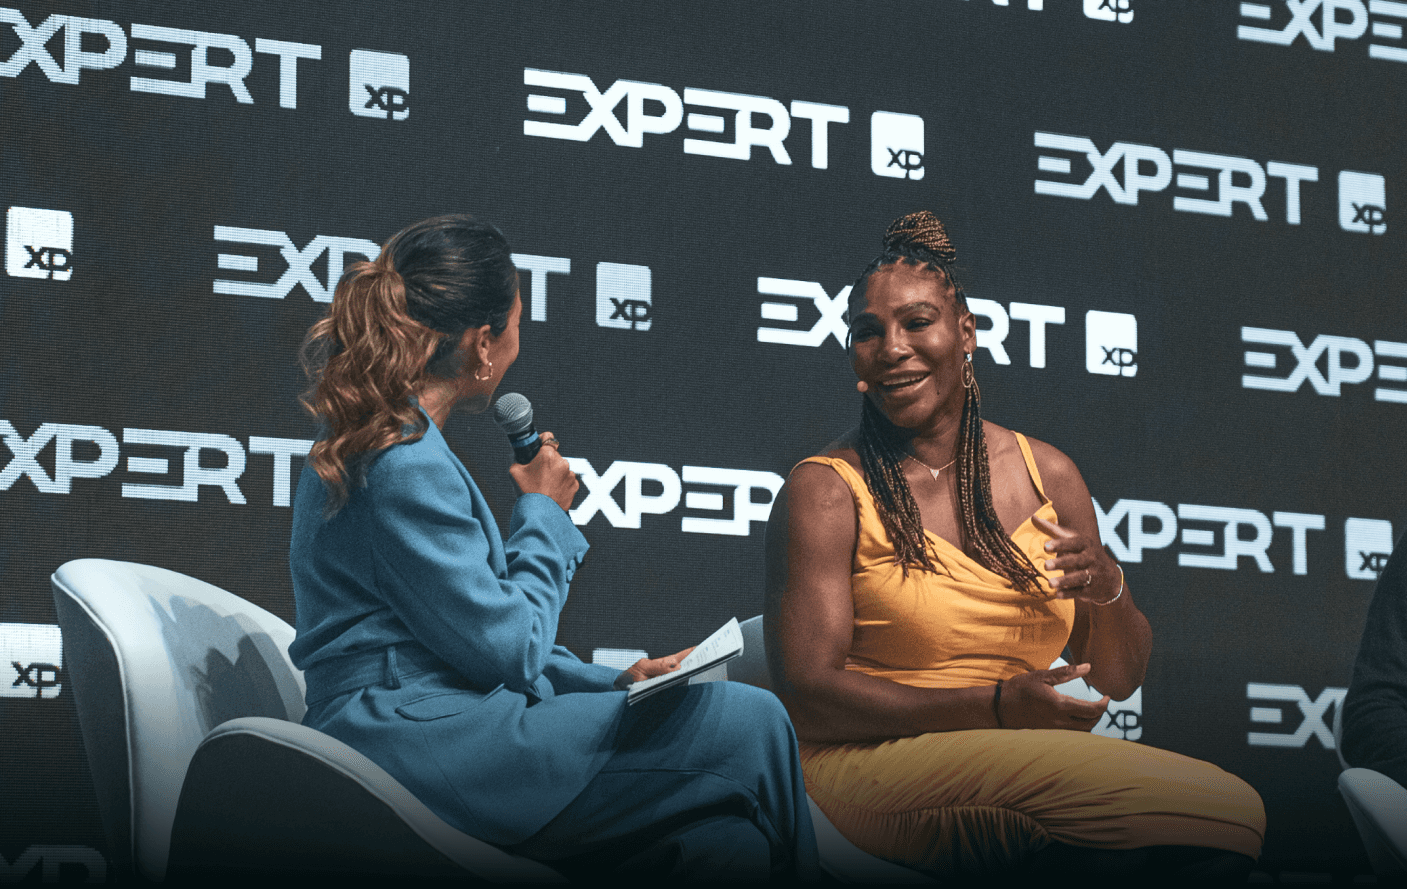 Serena Williams anuncia fundo de investimentos próprio - Pequenas Empresas  Grandes Negócios